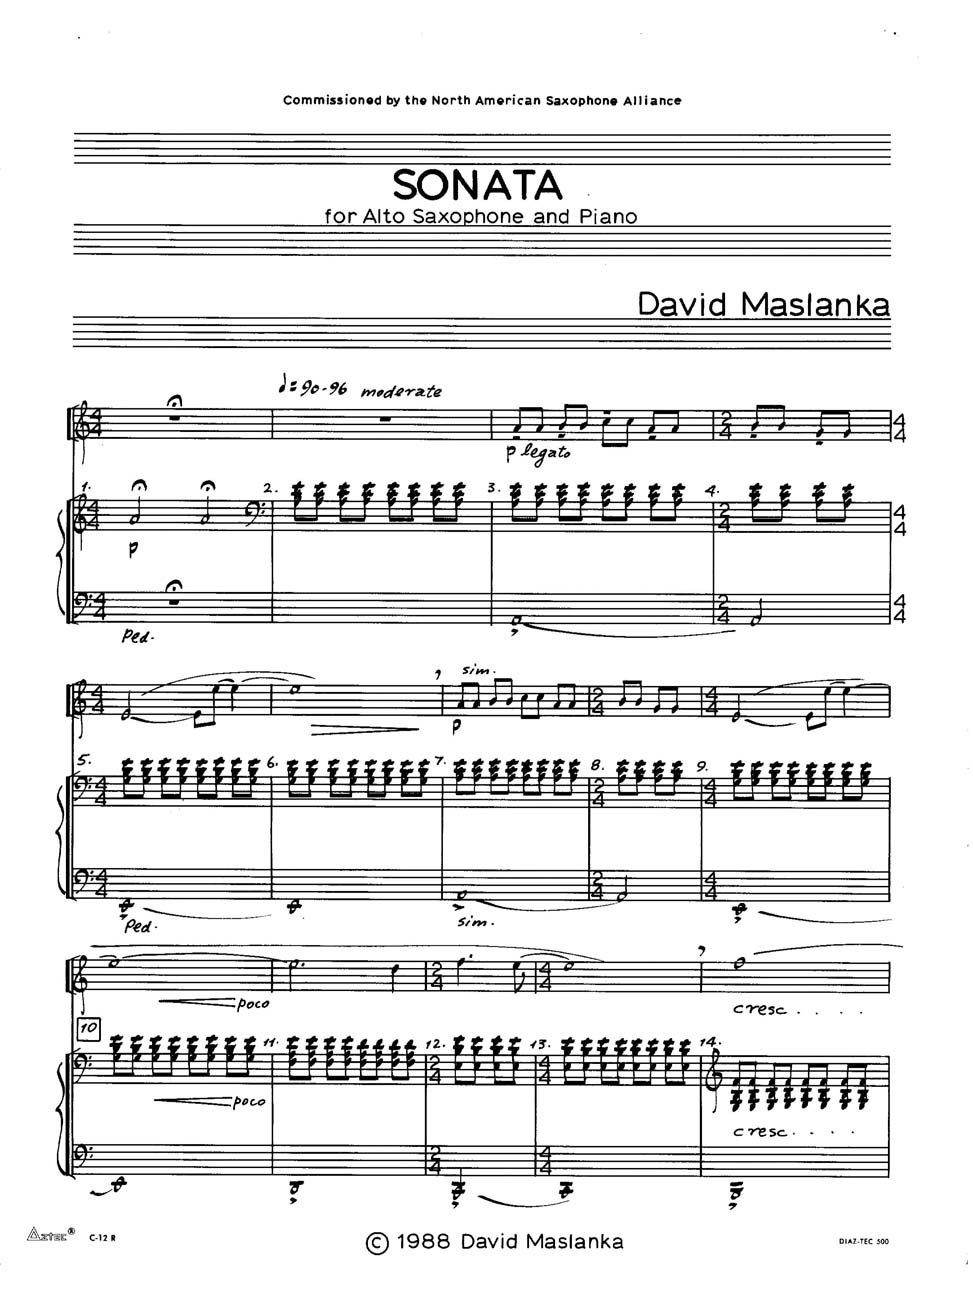 For Alto Saxophone and Piano Sonata 